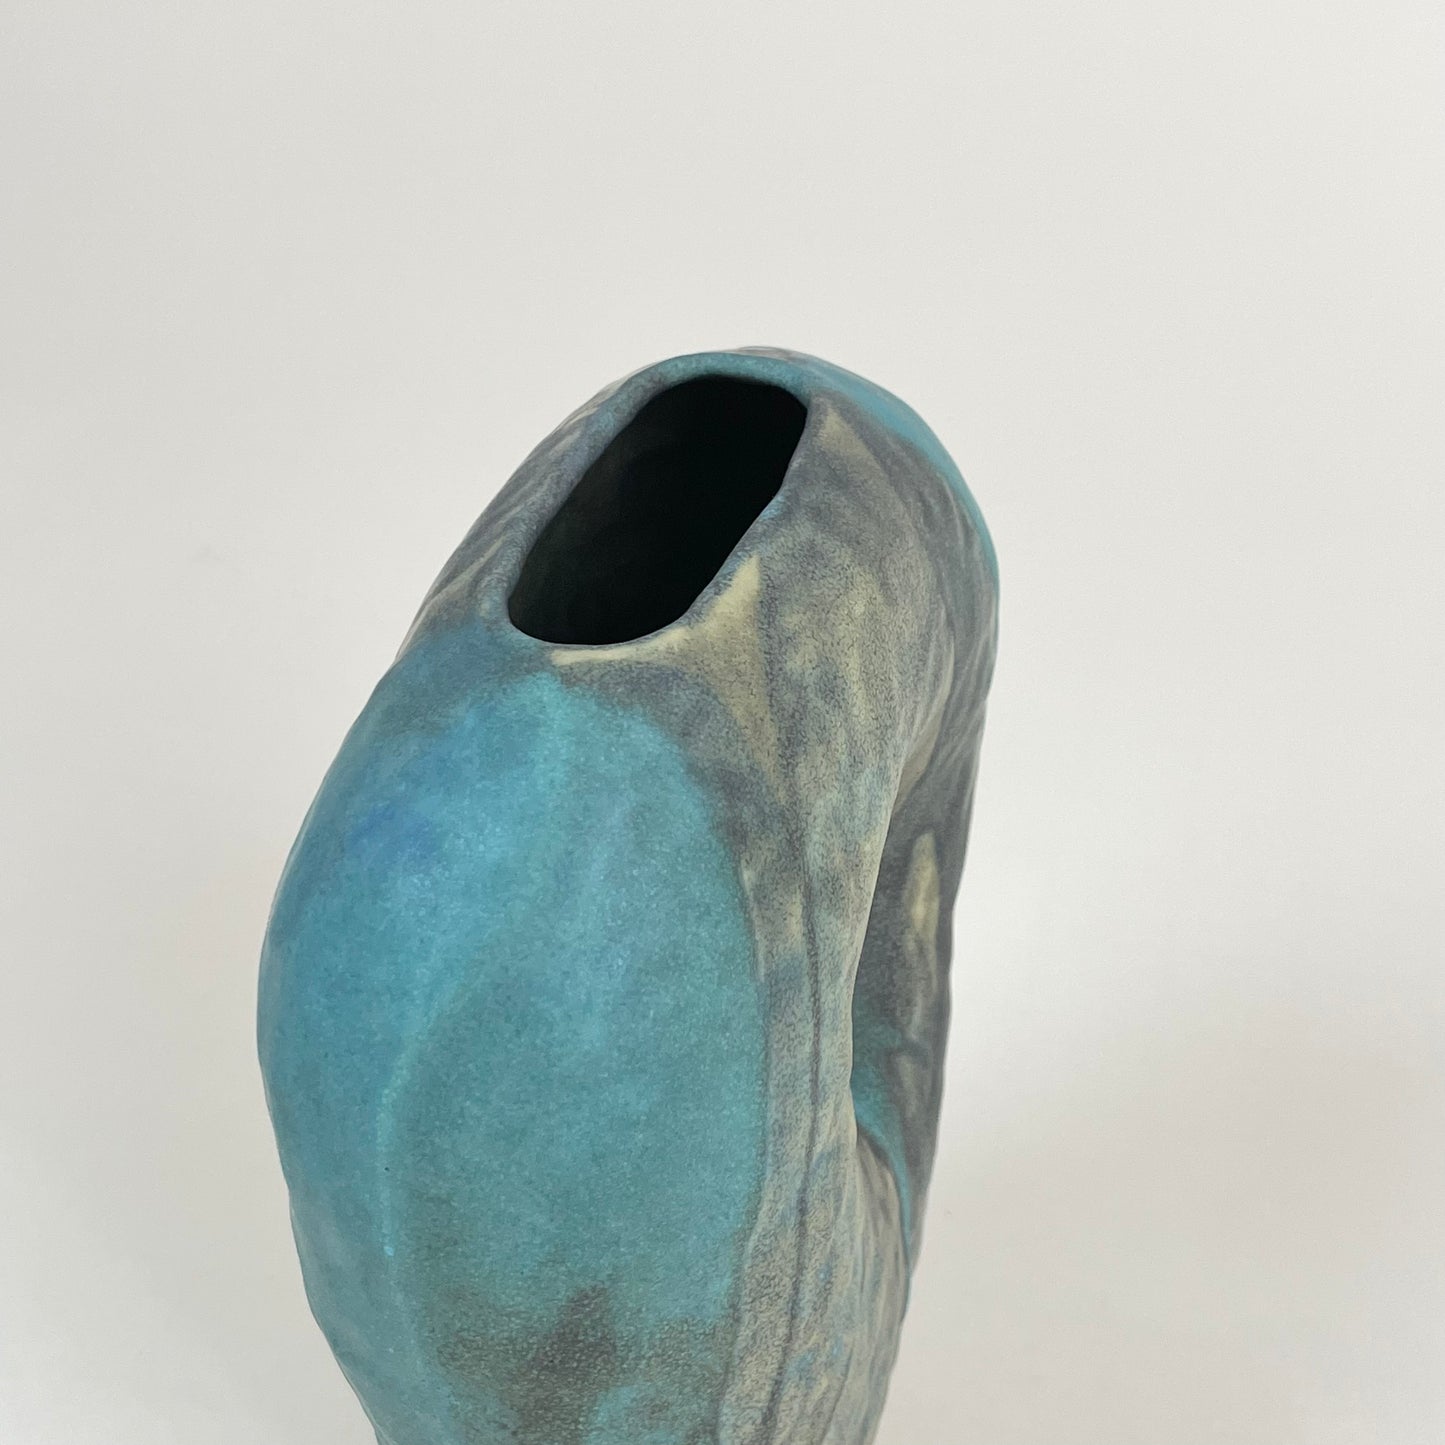 Green ceramic vase by Malwina Kleparska